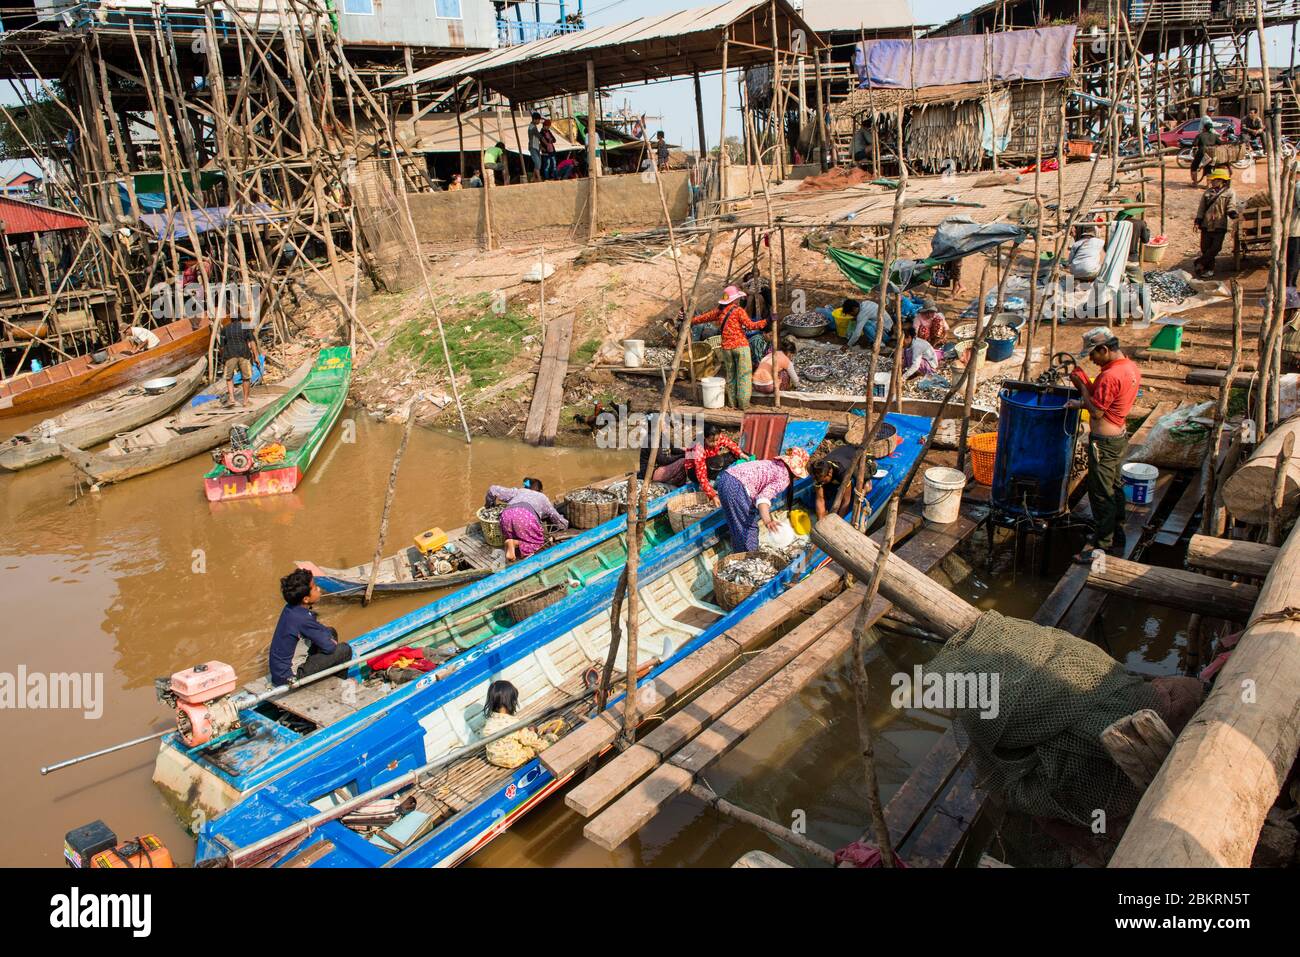 Cambodge, Kompong Kleang ou Kampong Kleang, village sur pilotis au bord du lac Tonle SAP, de retour de la pêche Banque D'Images